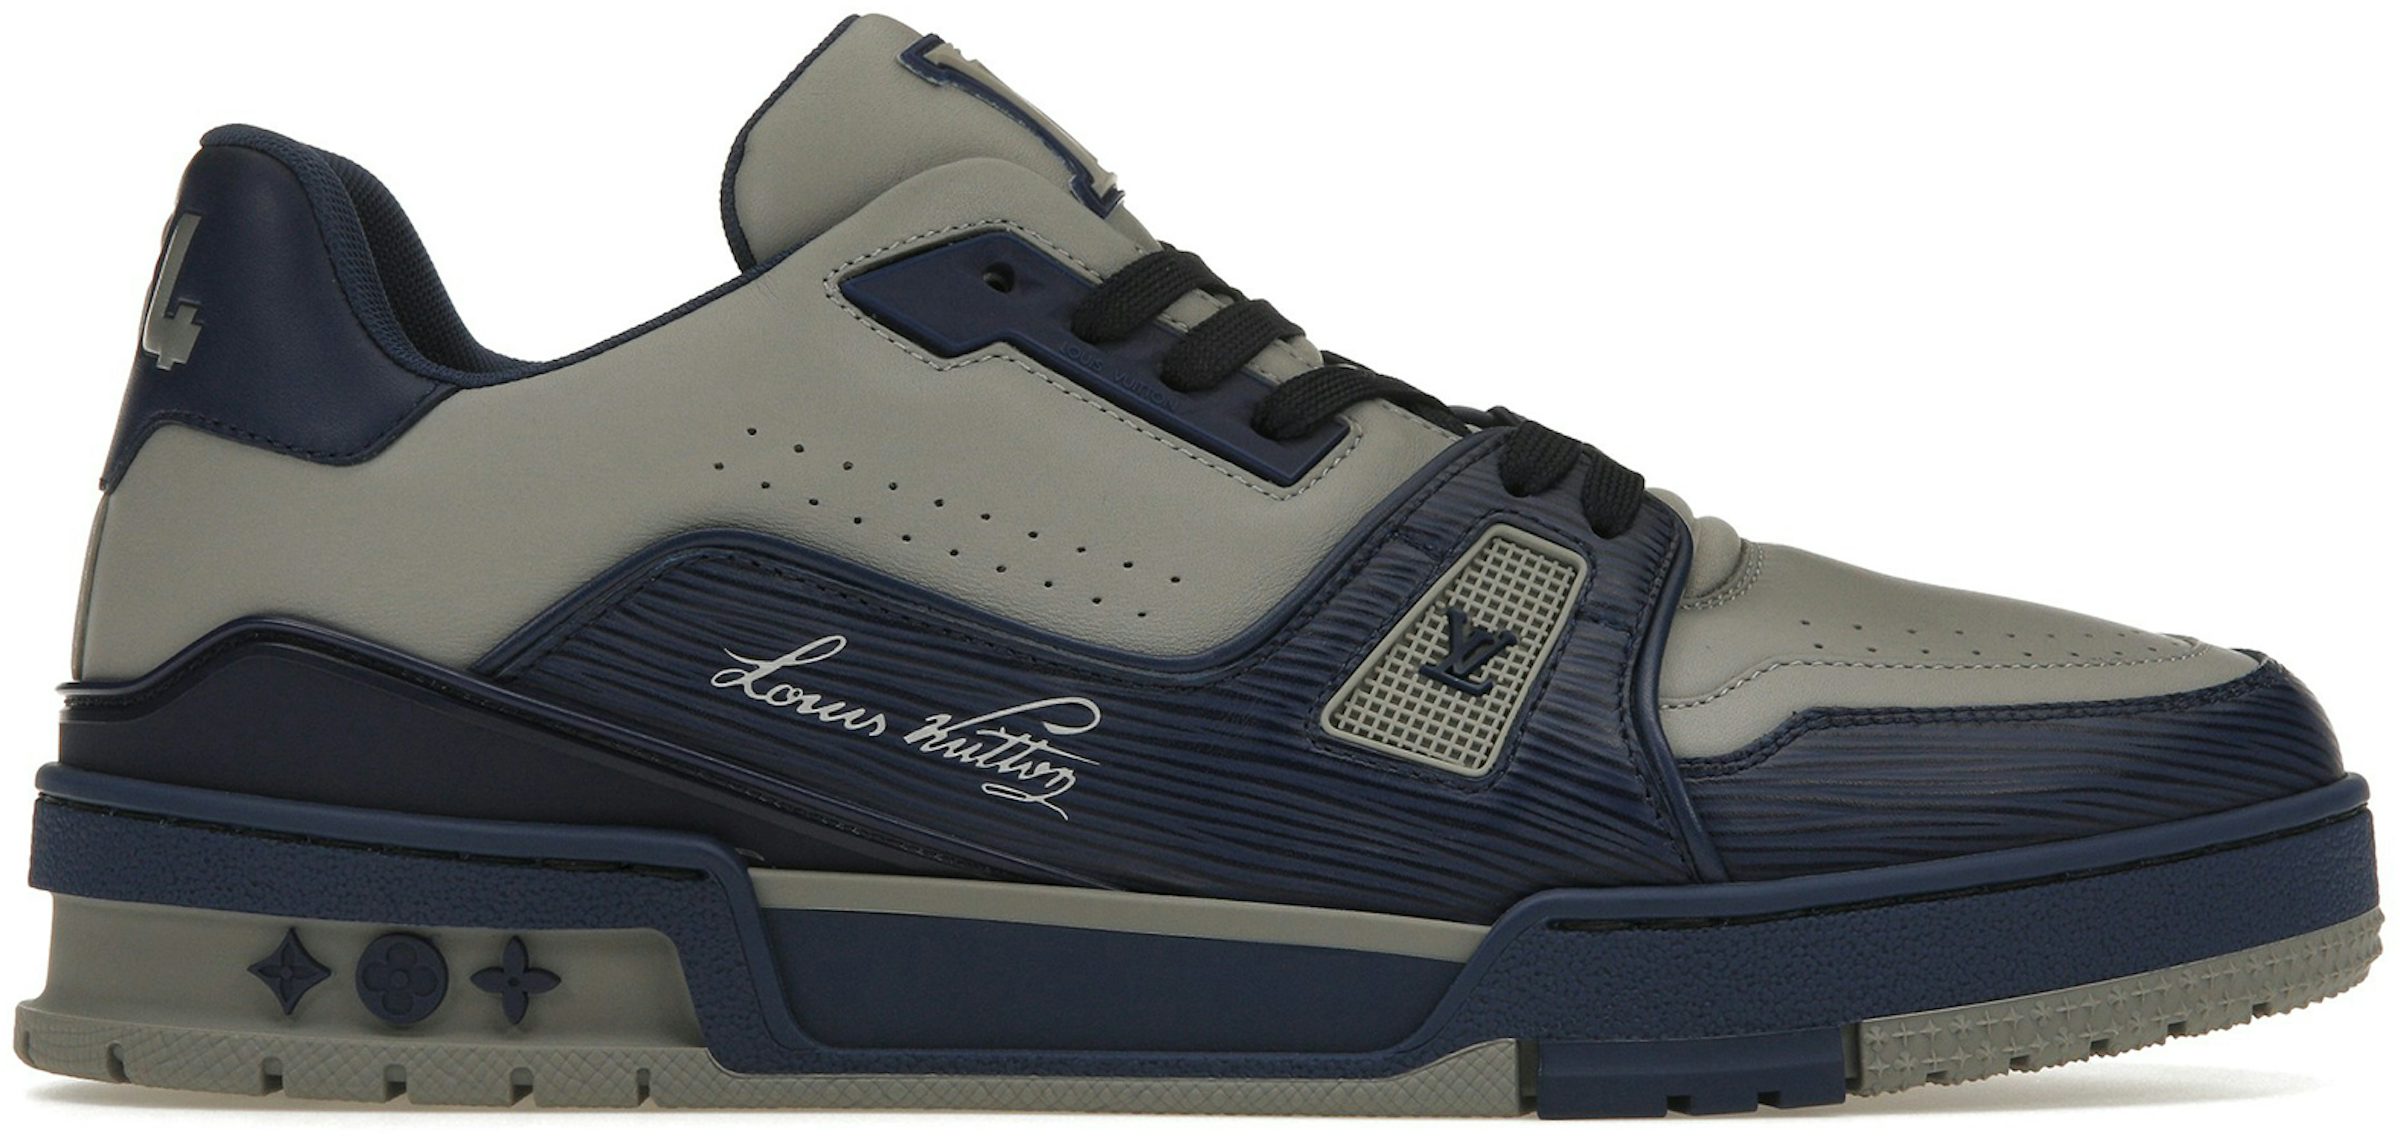 Sneakers Louis Vuitton Louis Vuitton Men's Black & Blue Damier Trainers Rubber Sole Lace Up Shoes 7.5UK